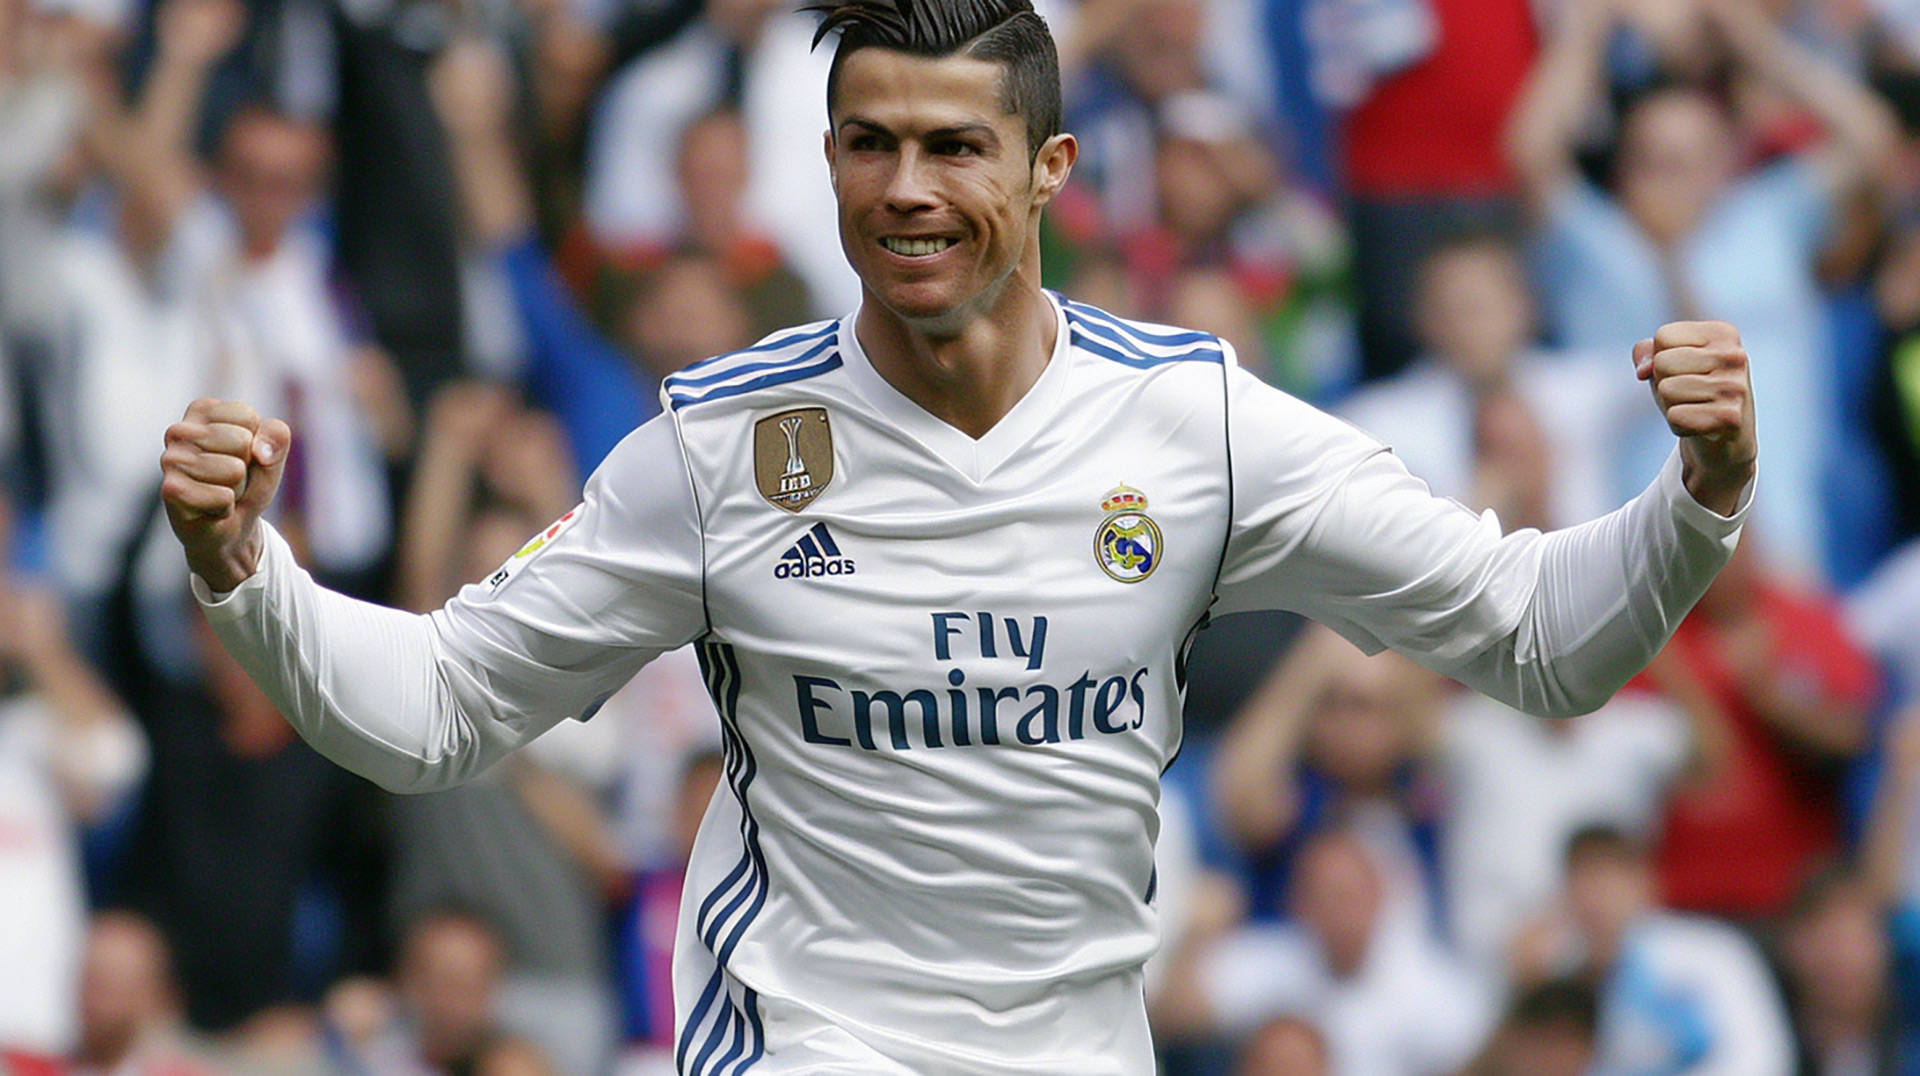 Cristiano Ronaldo HD Wallpaper: 16:9 Aspect Ratio